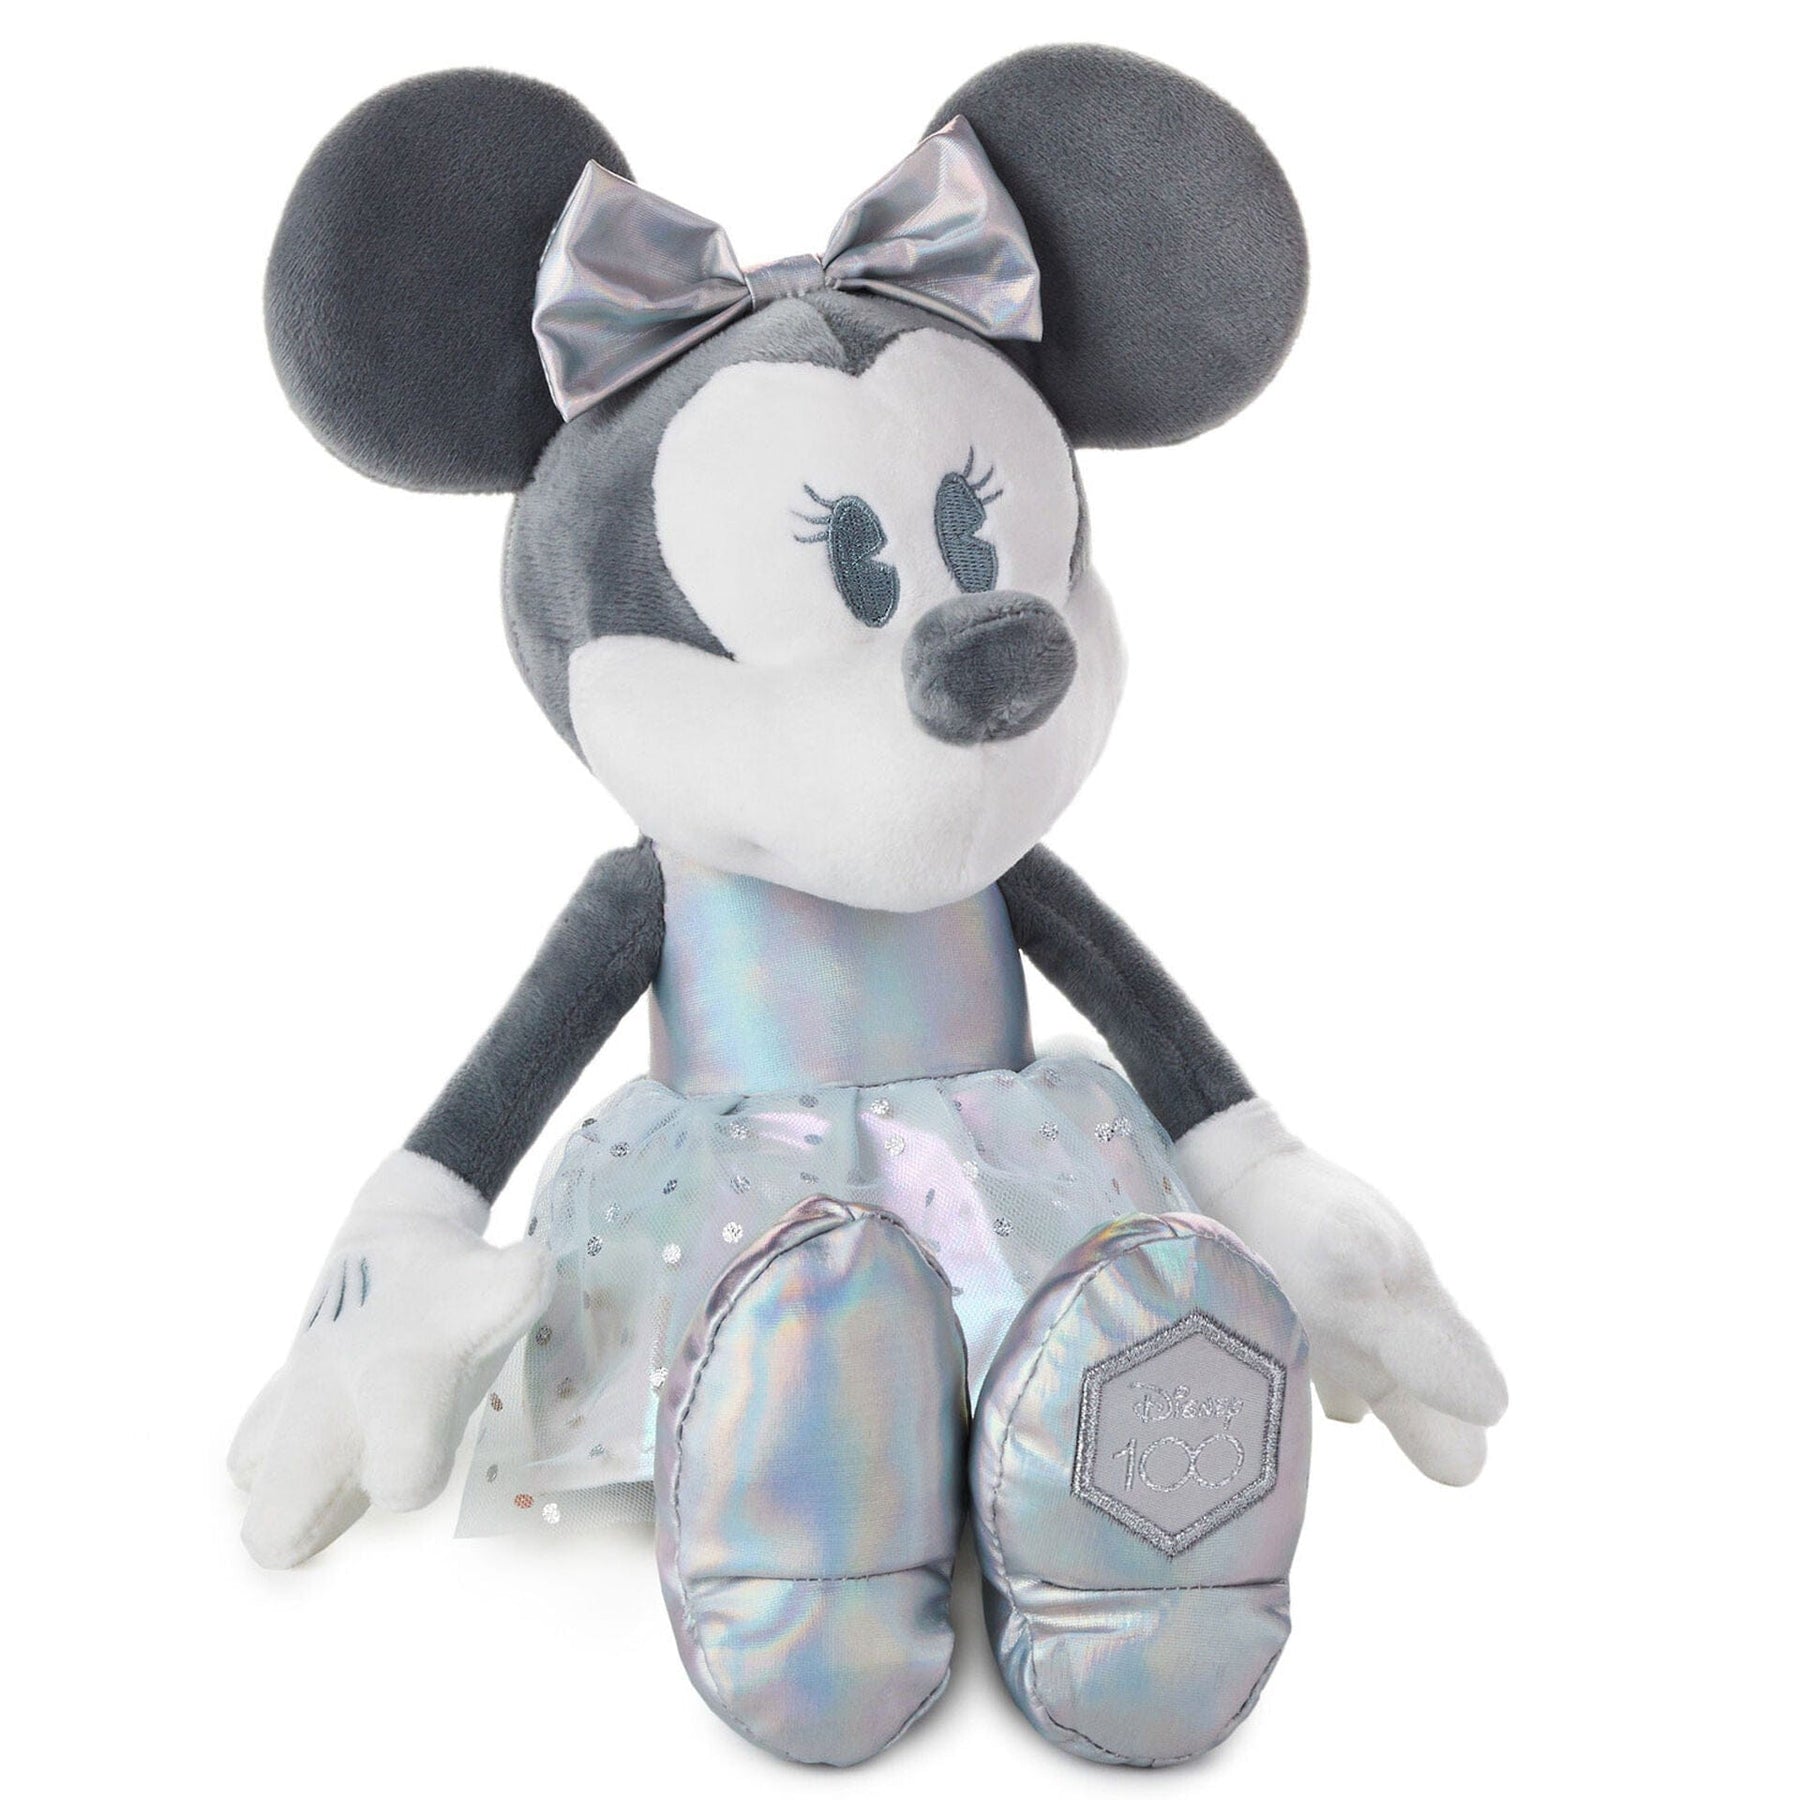 Disney Minnie Mouse Plush Keychain/Coin Purse - Curious Bazaar